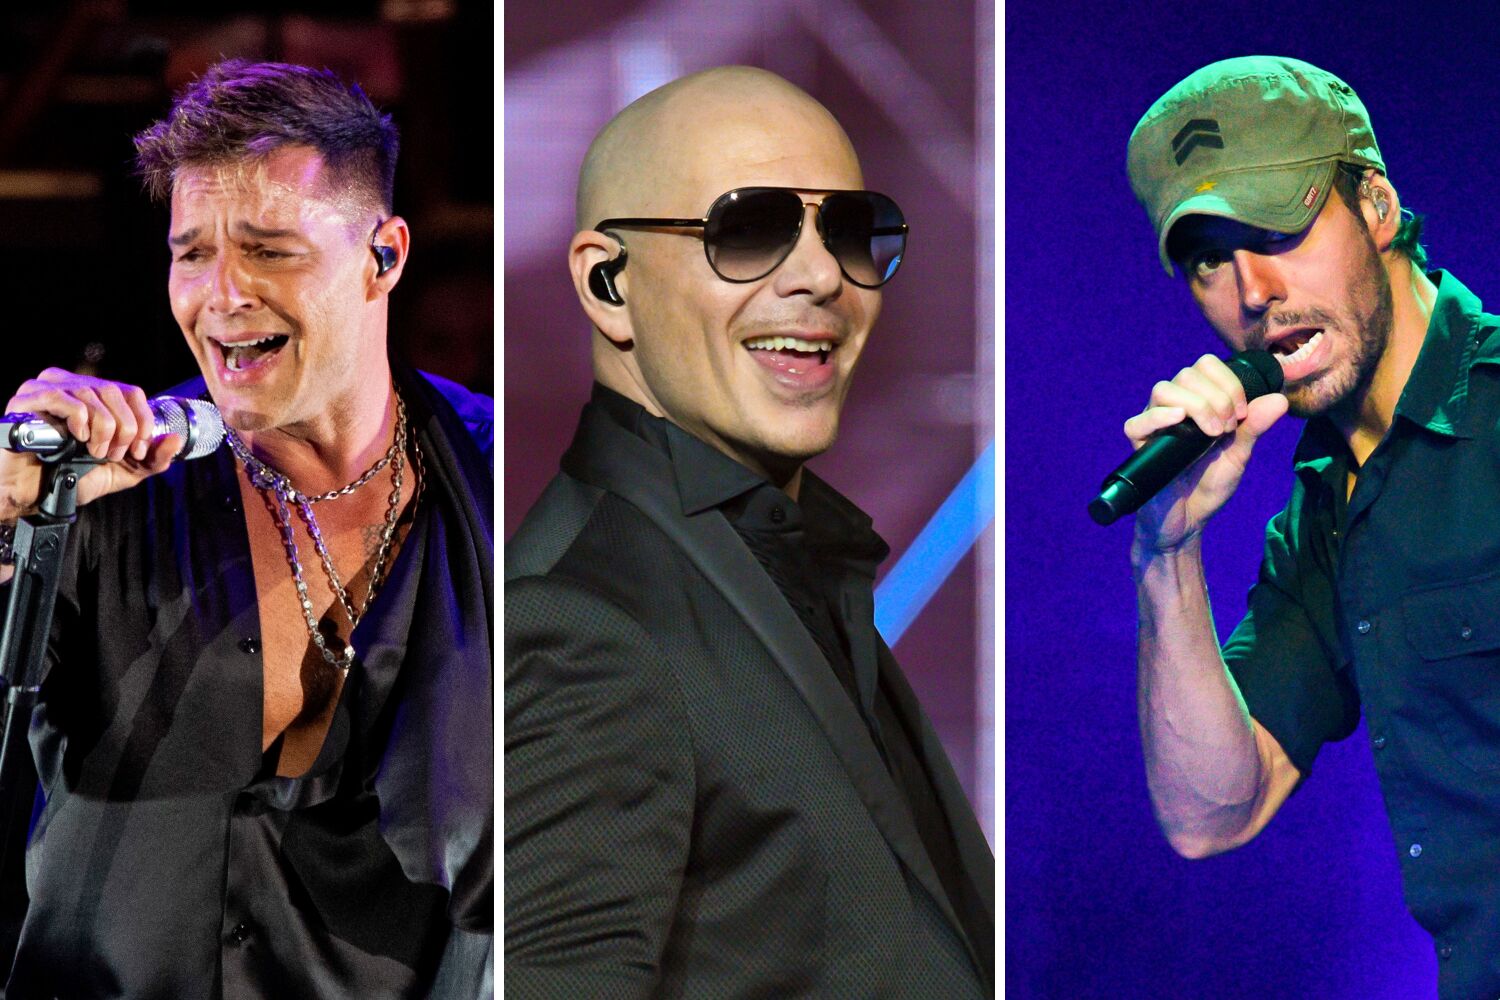 Bailamos! Ricky Martin, Pitbull, Enrique Iglesias join forces for Trilogy arena tour 